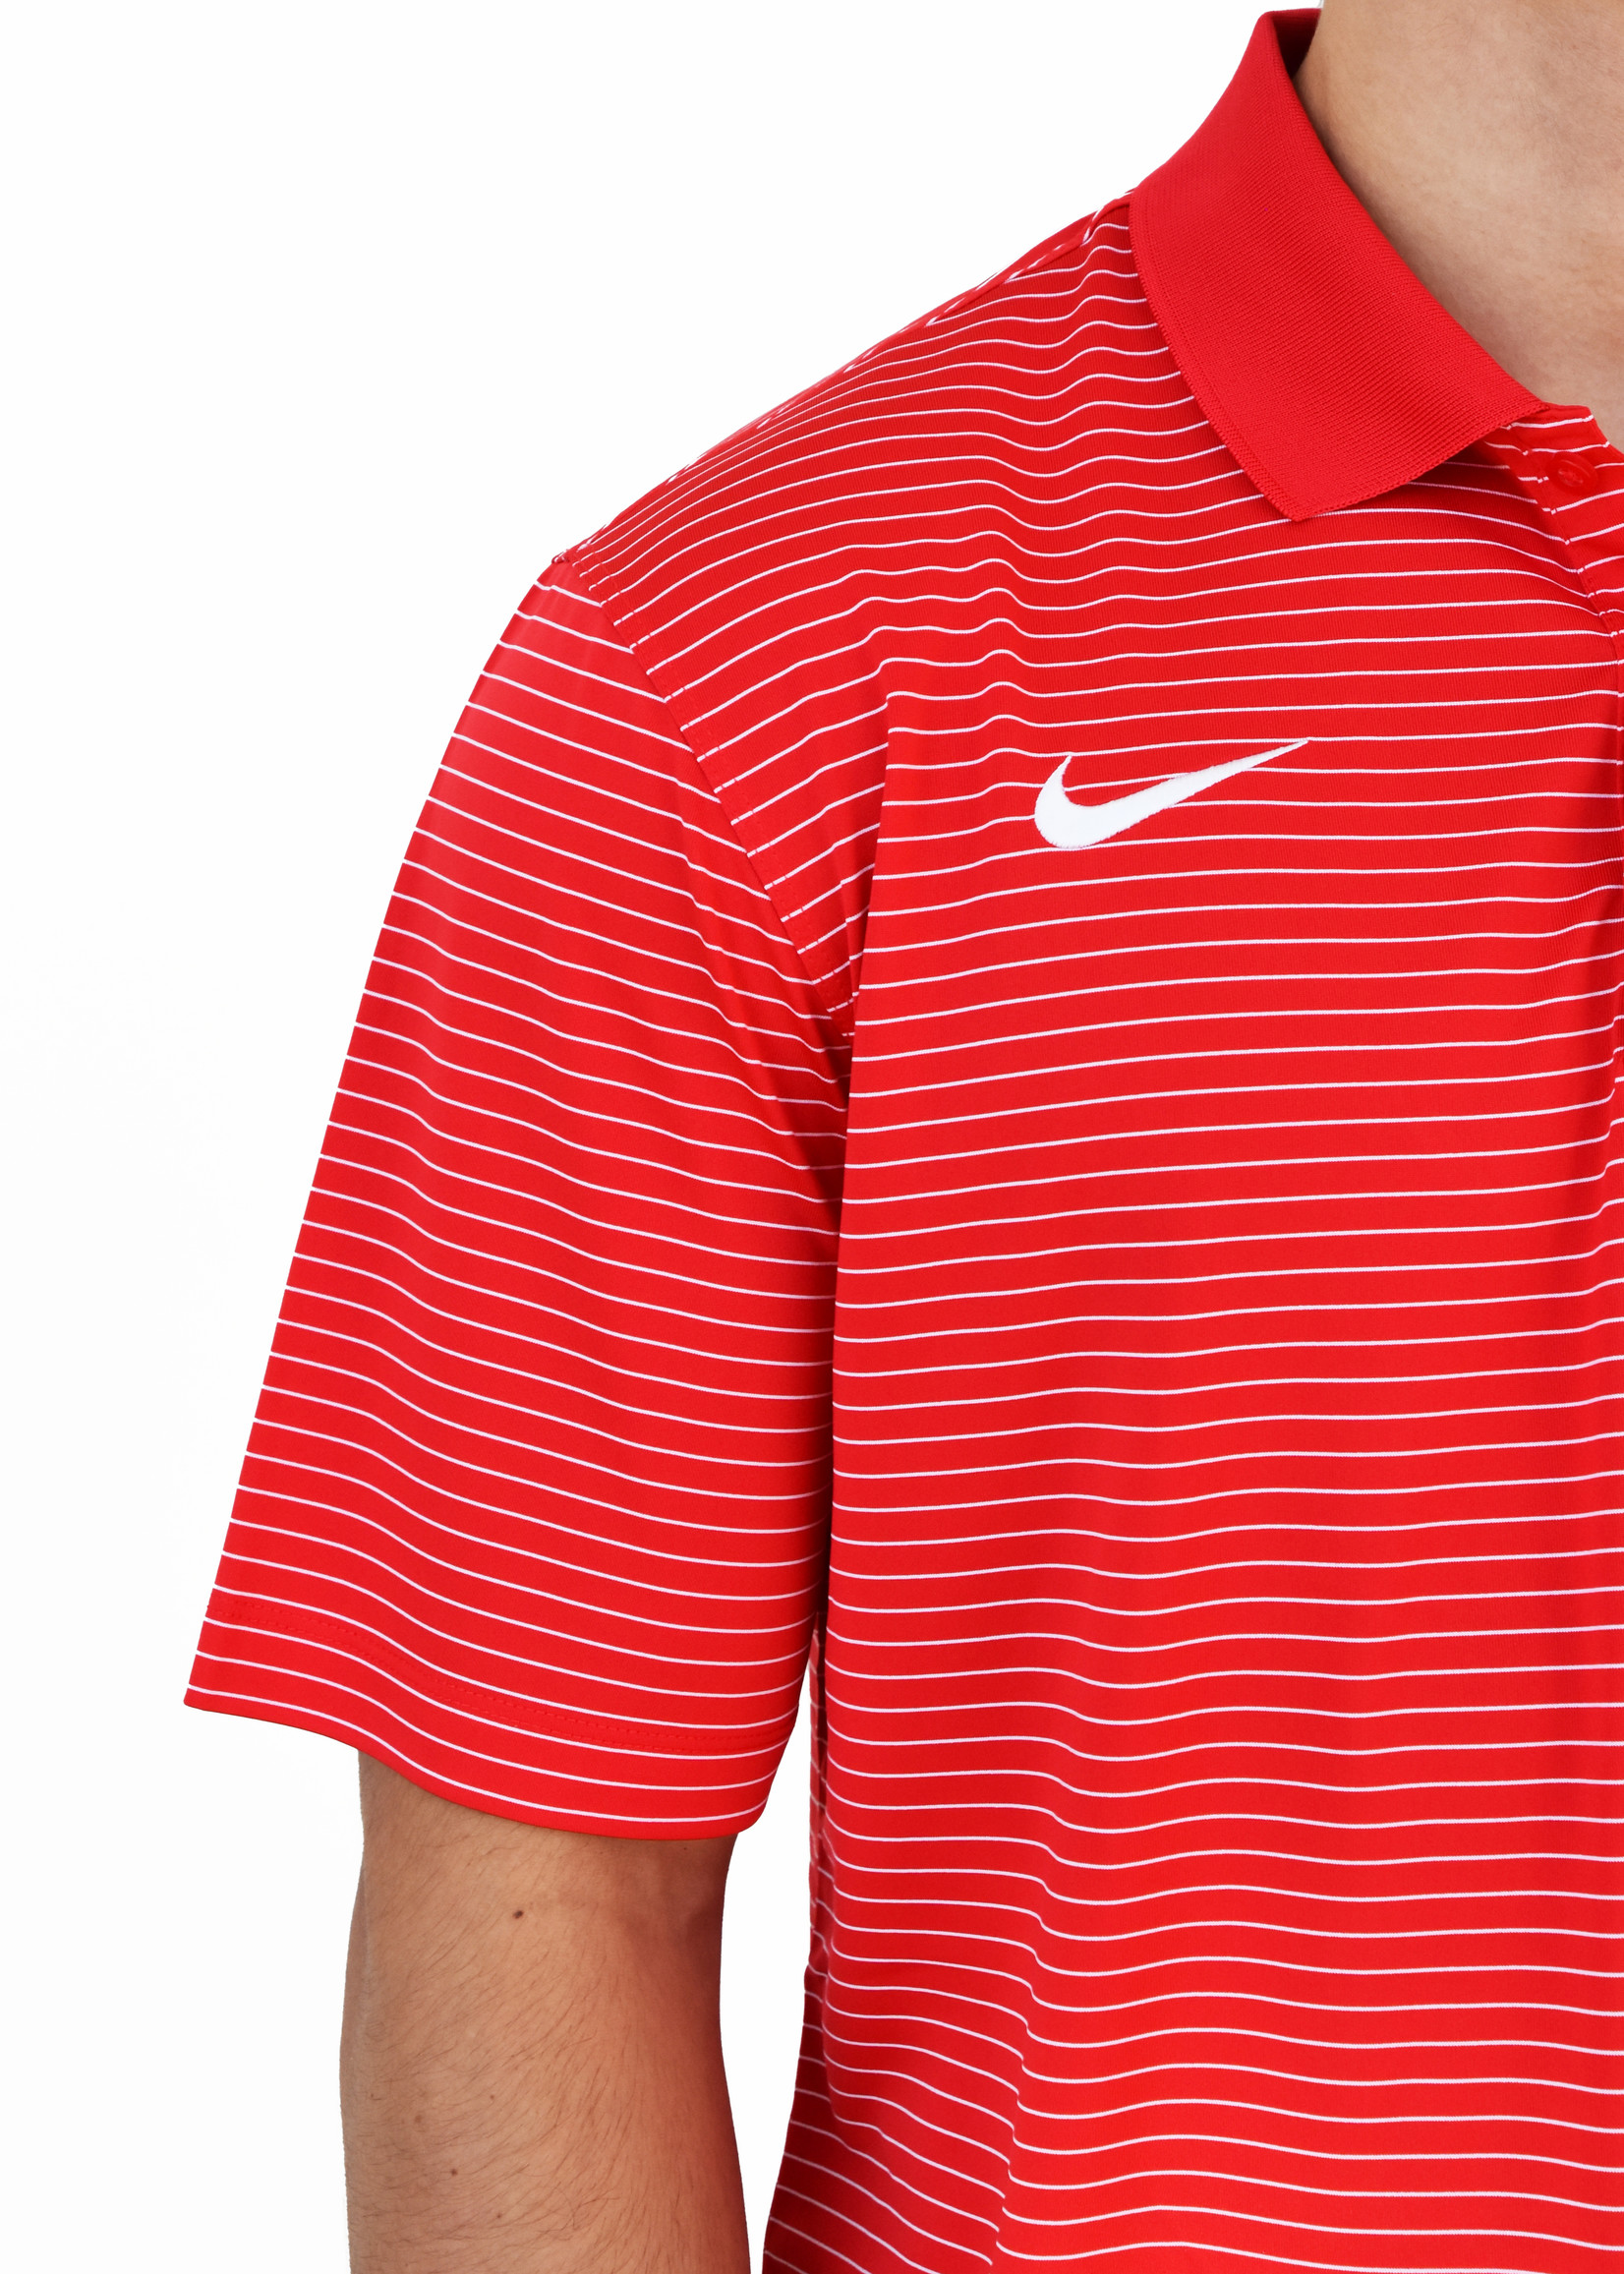 Nike Red Stadium Stripe Polo